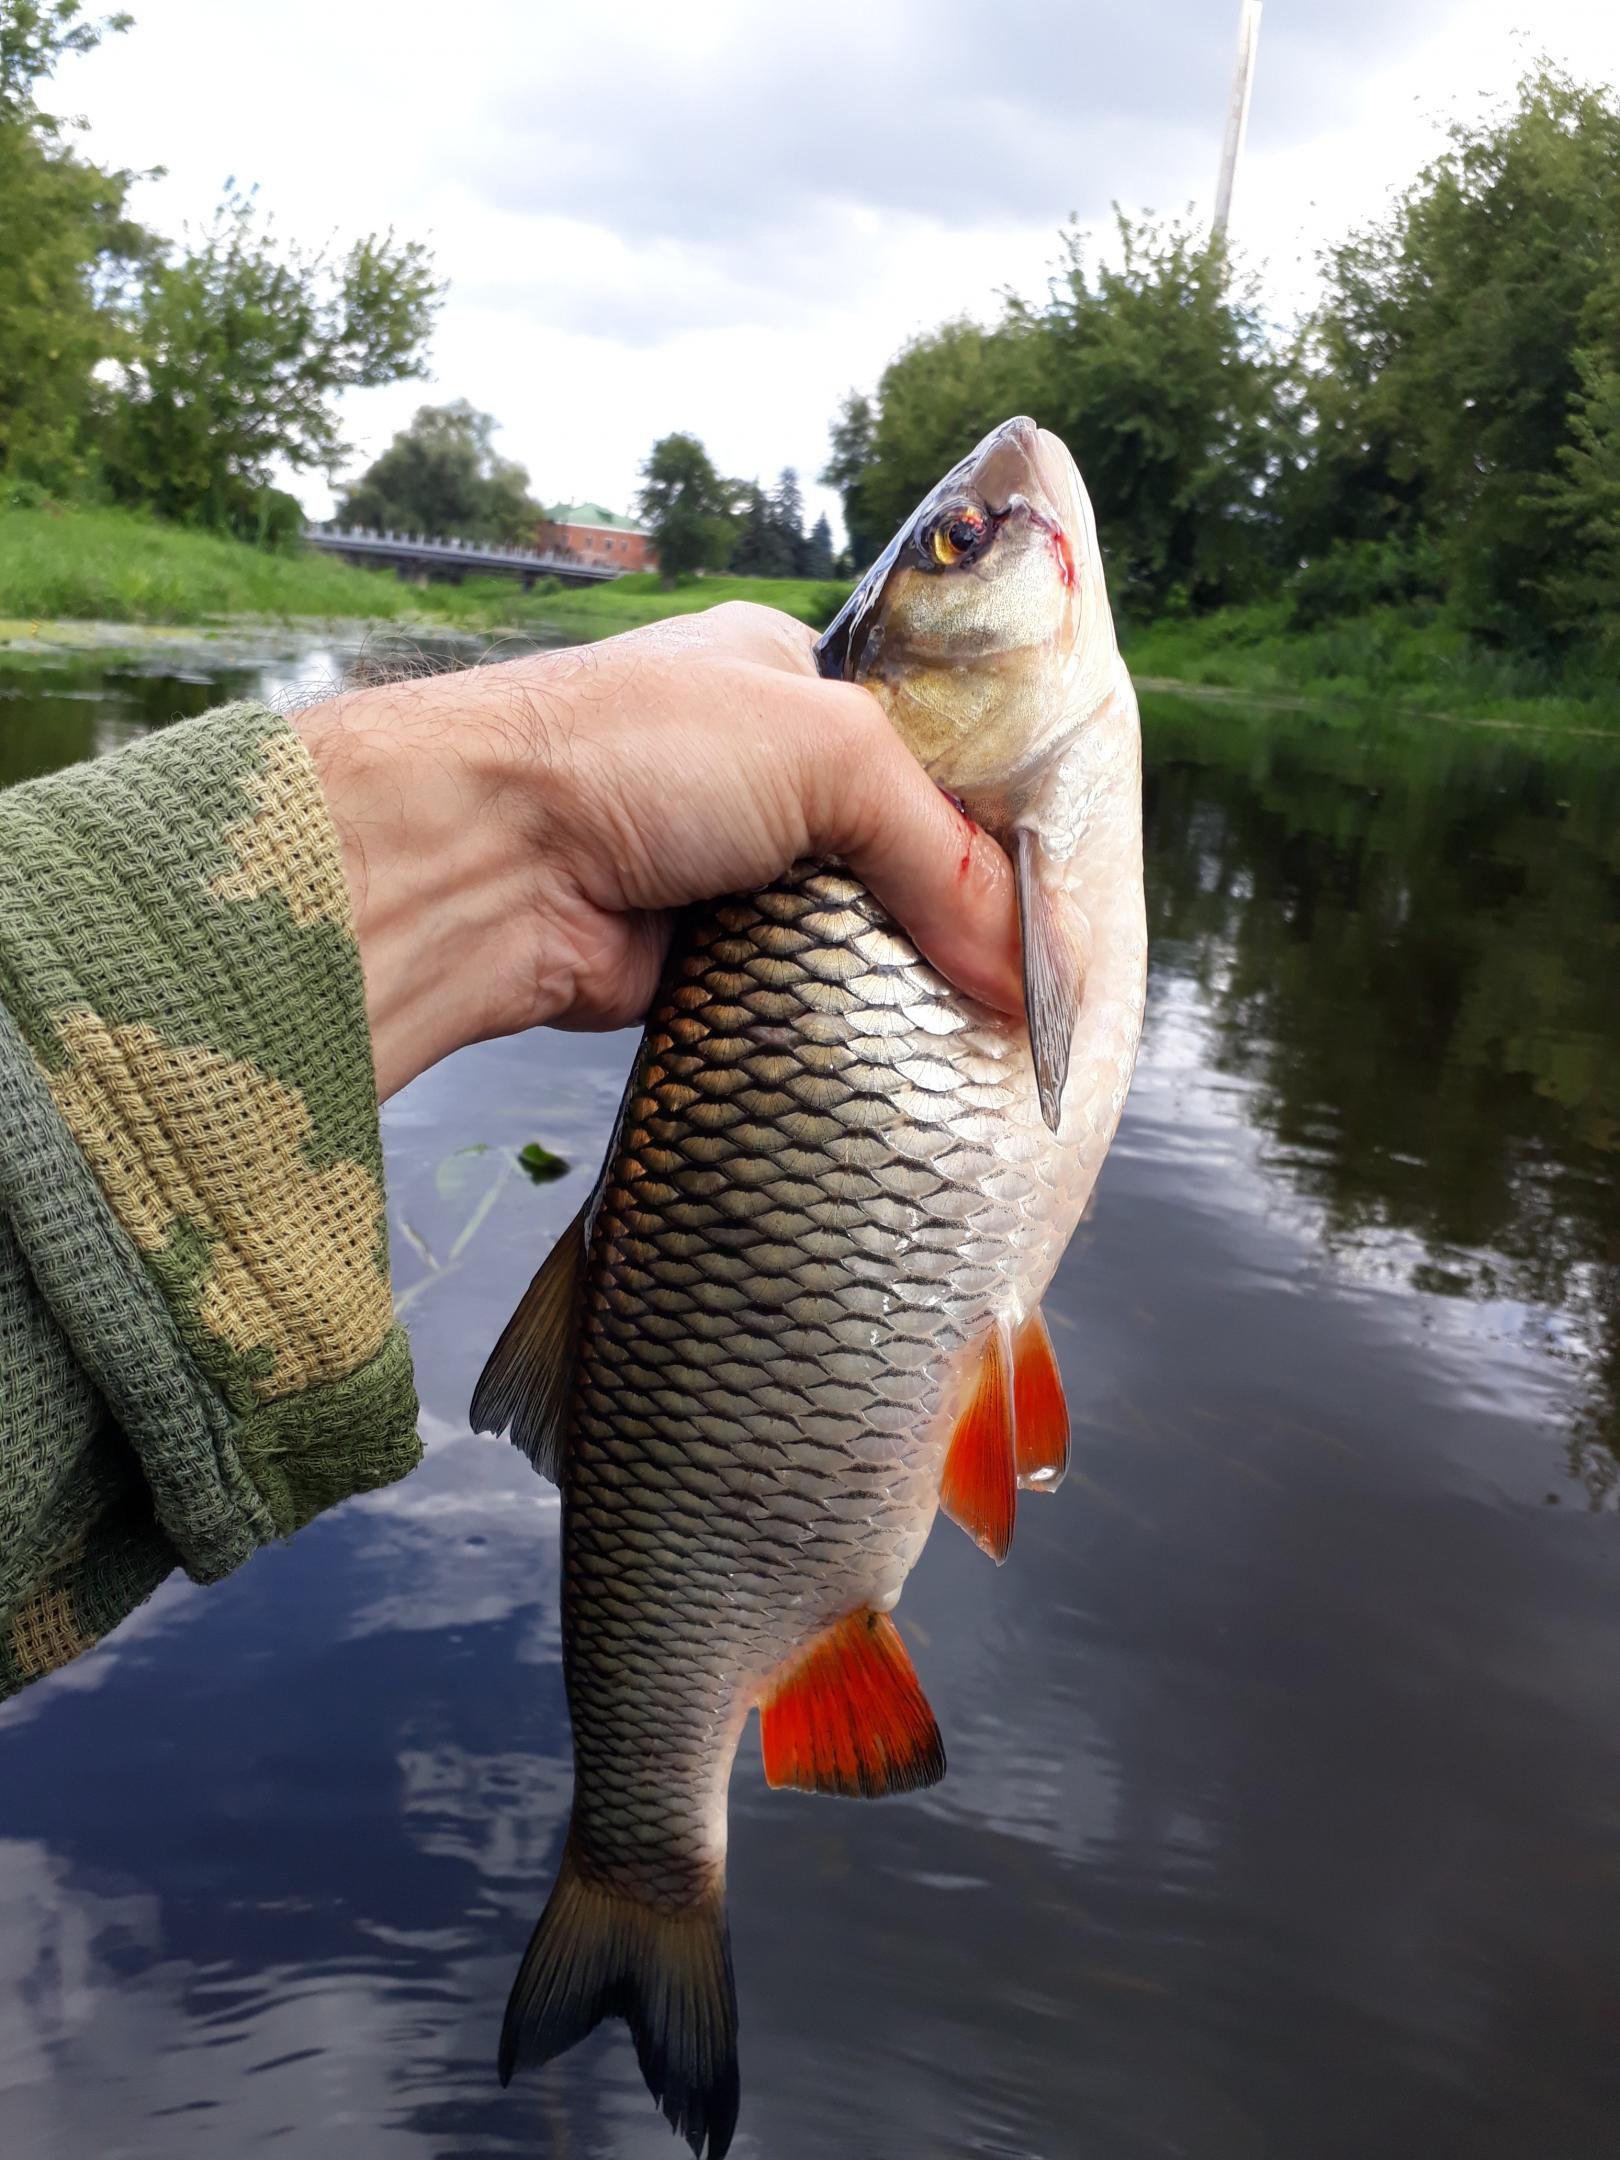  "Побродил" с ультриком на выходных по реке в ... | Отчеты о рыбалке в Беларуси